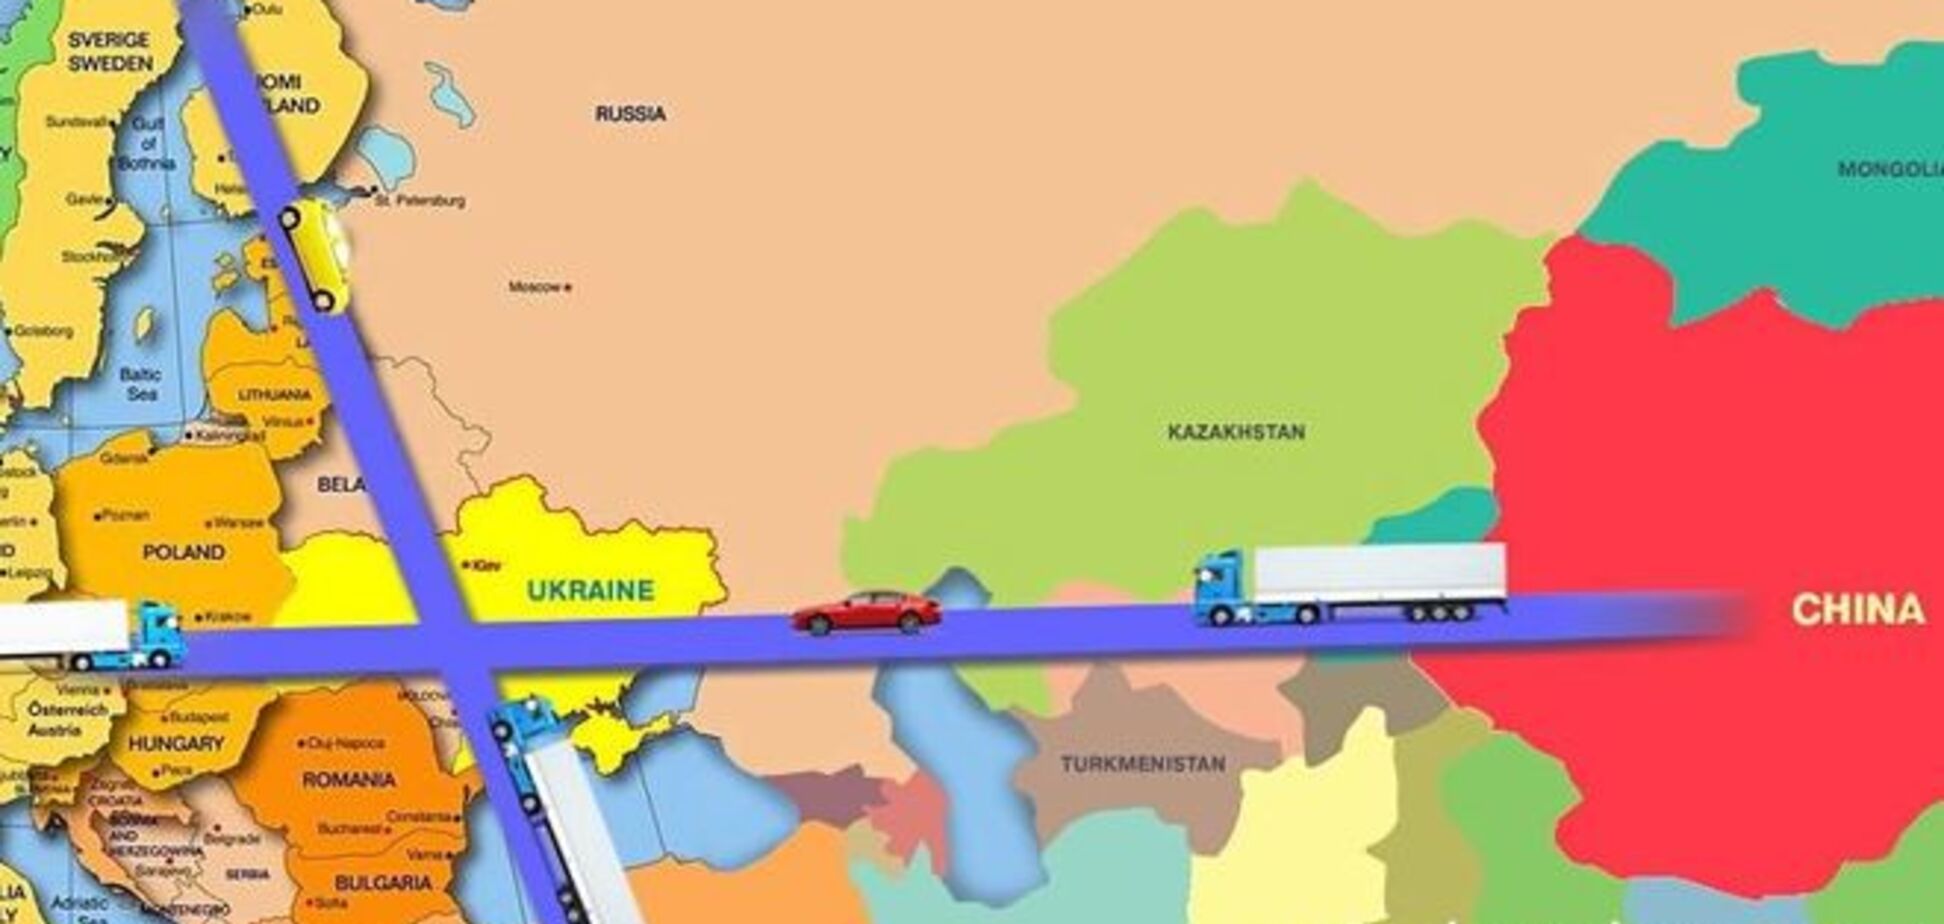 Великий Шёлковый путь из Балтии в Укры